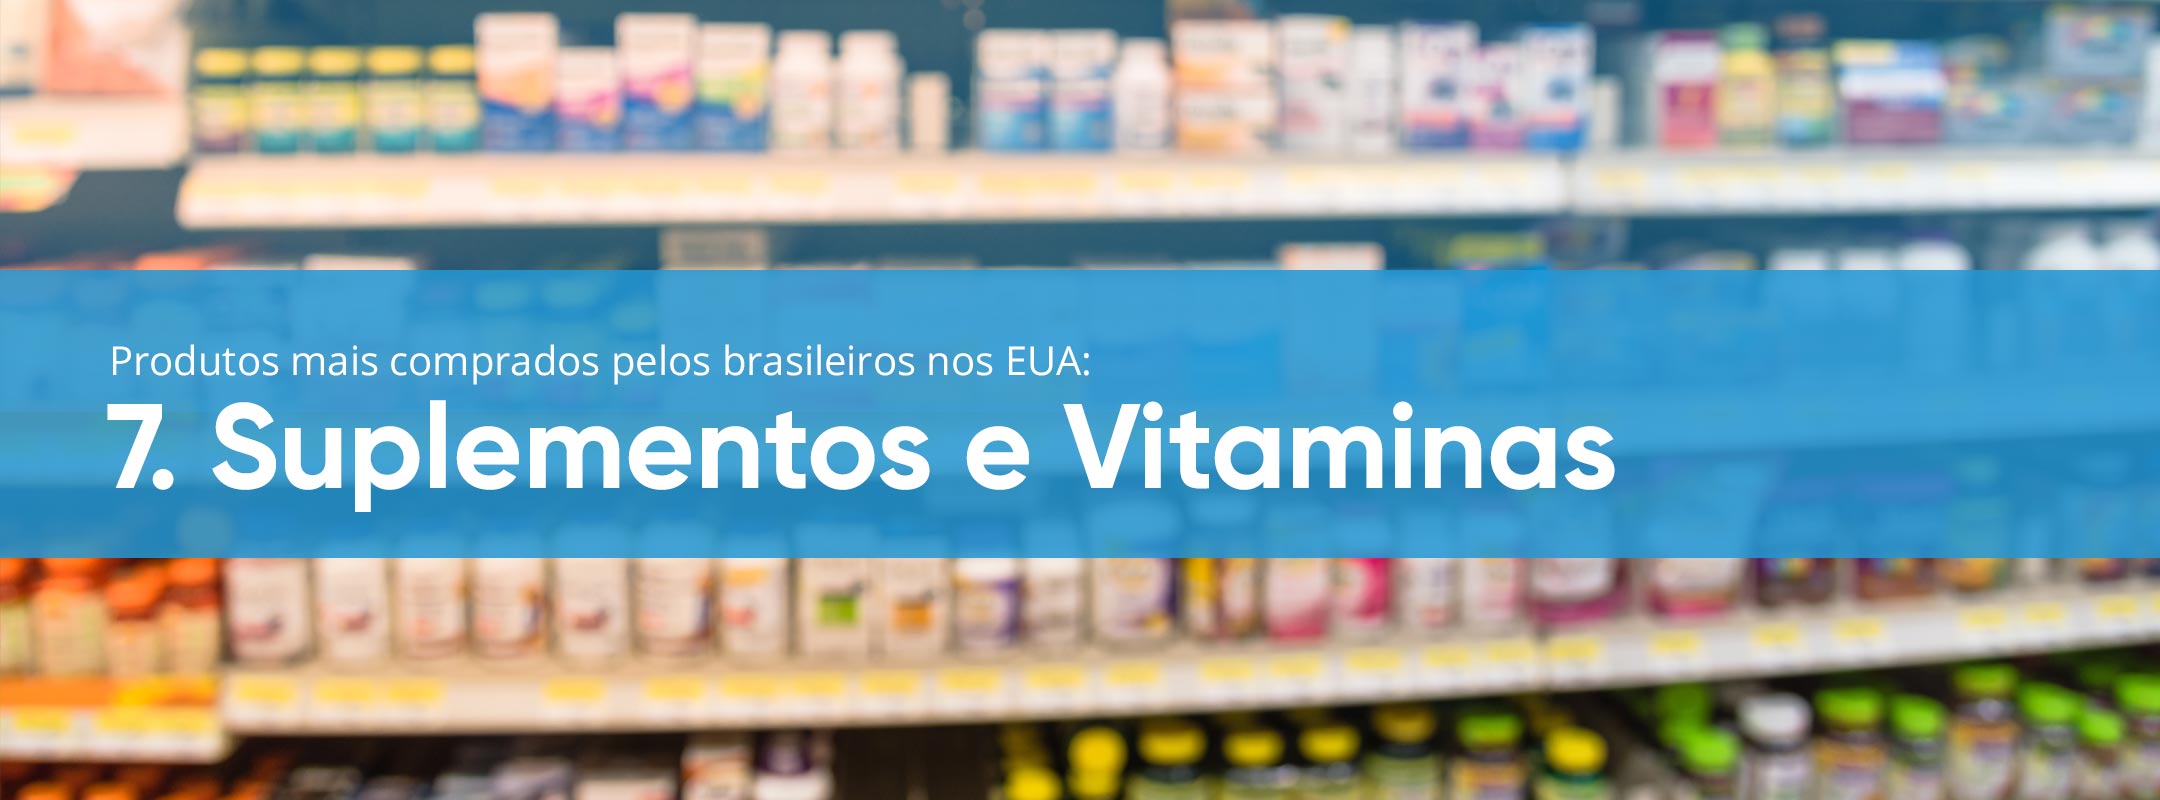 Suplementos_e_Vitaminas